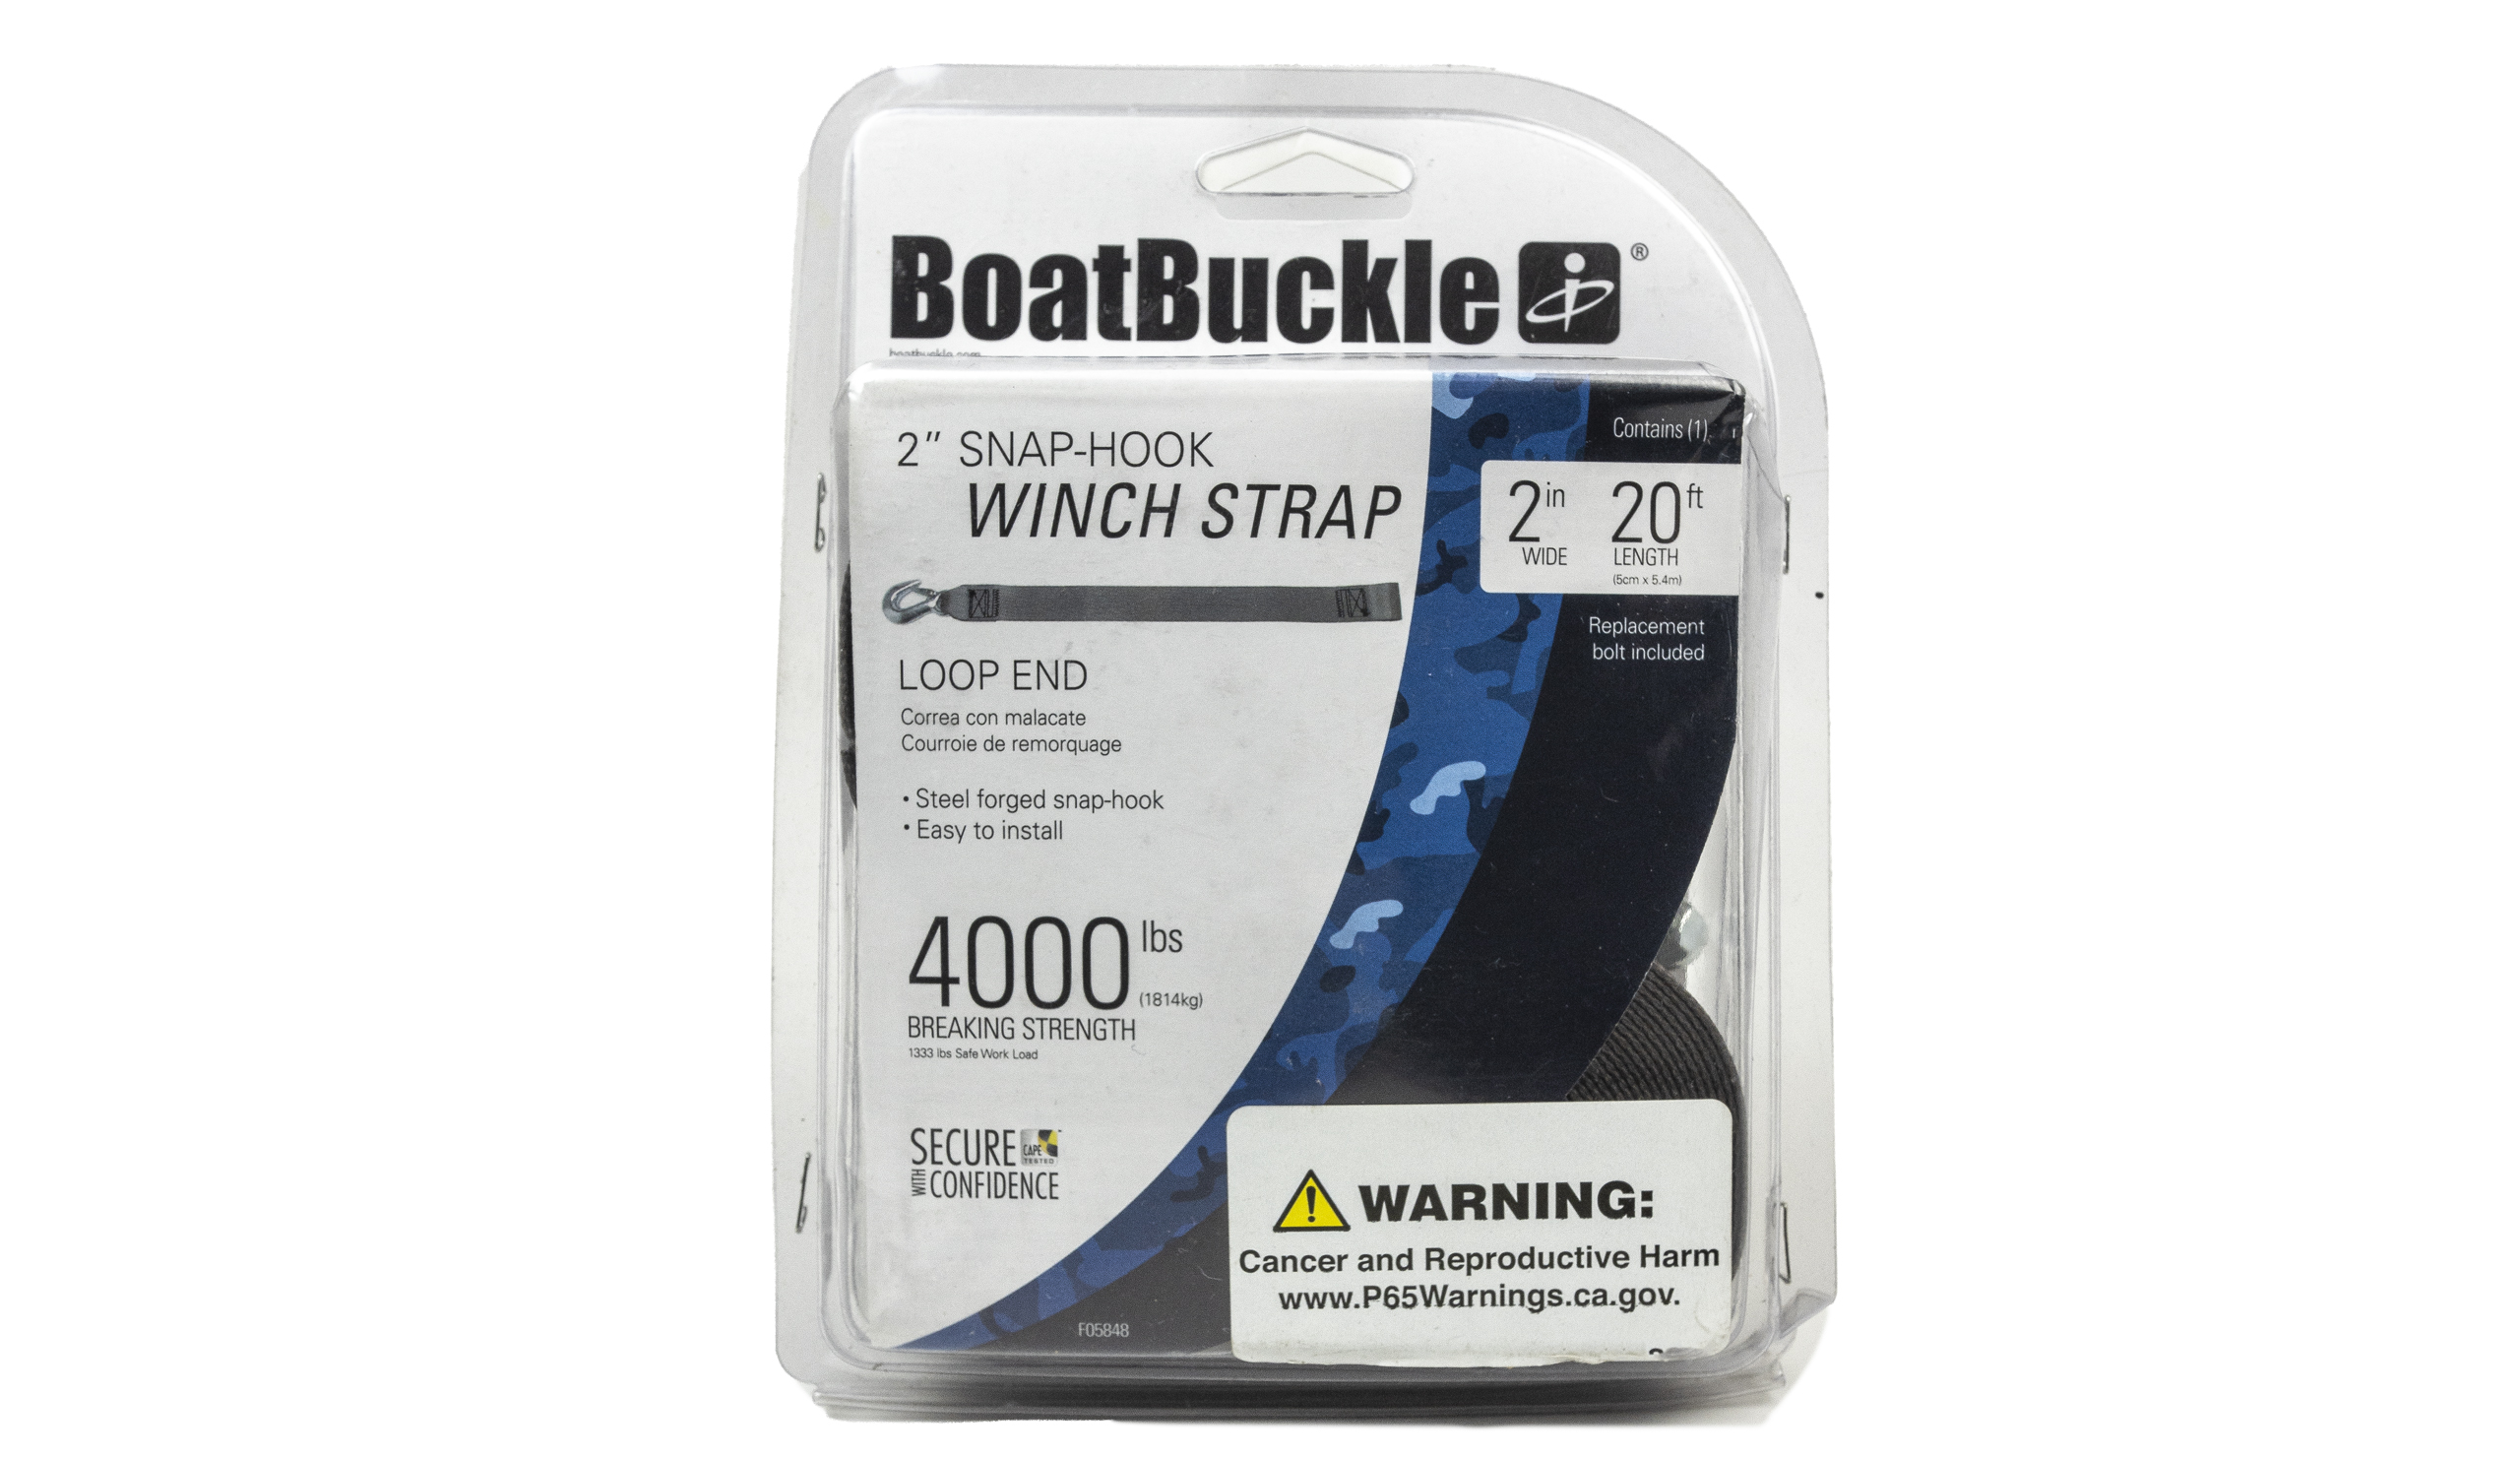 BoatBuckle Winch Strap